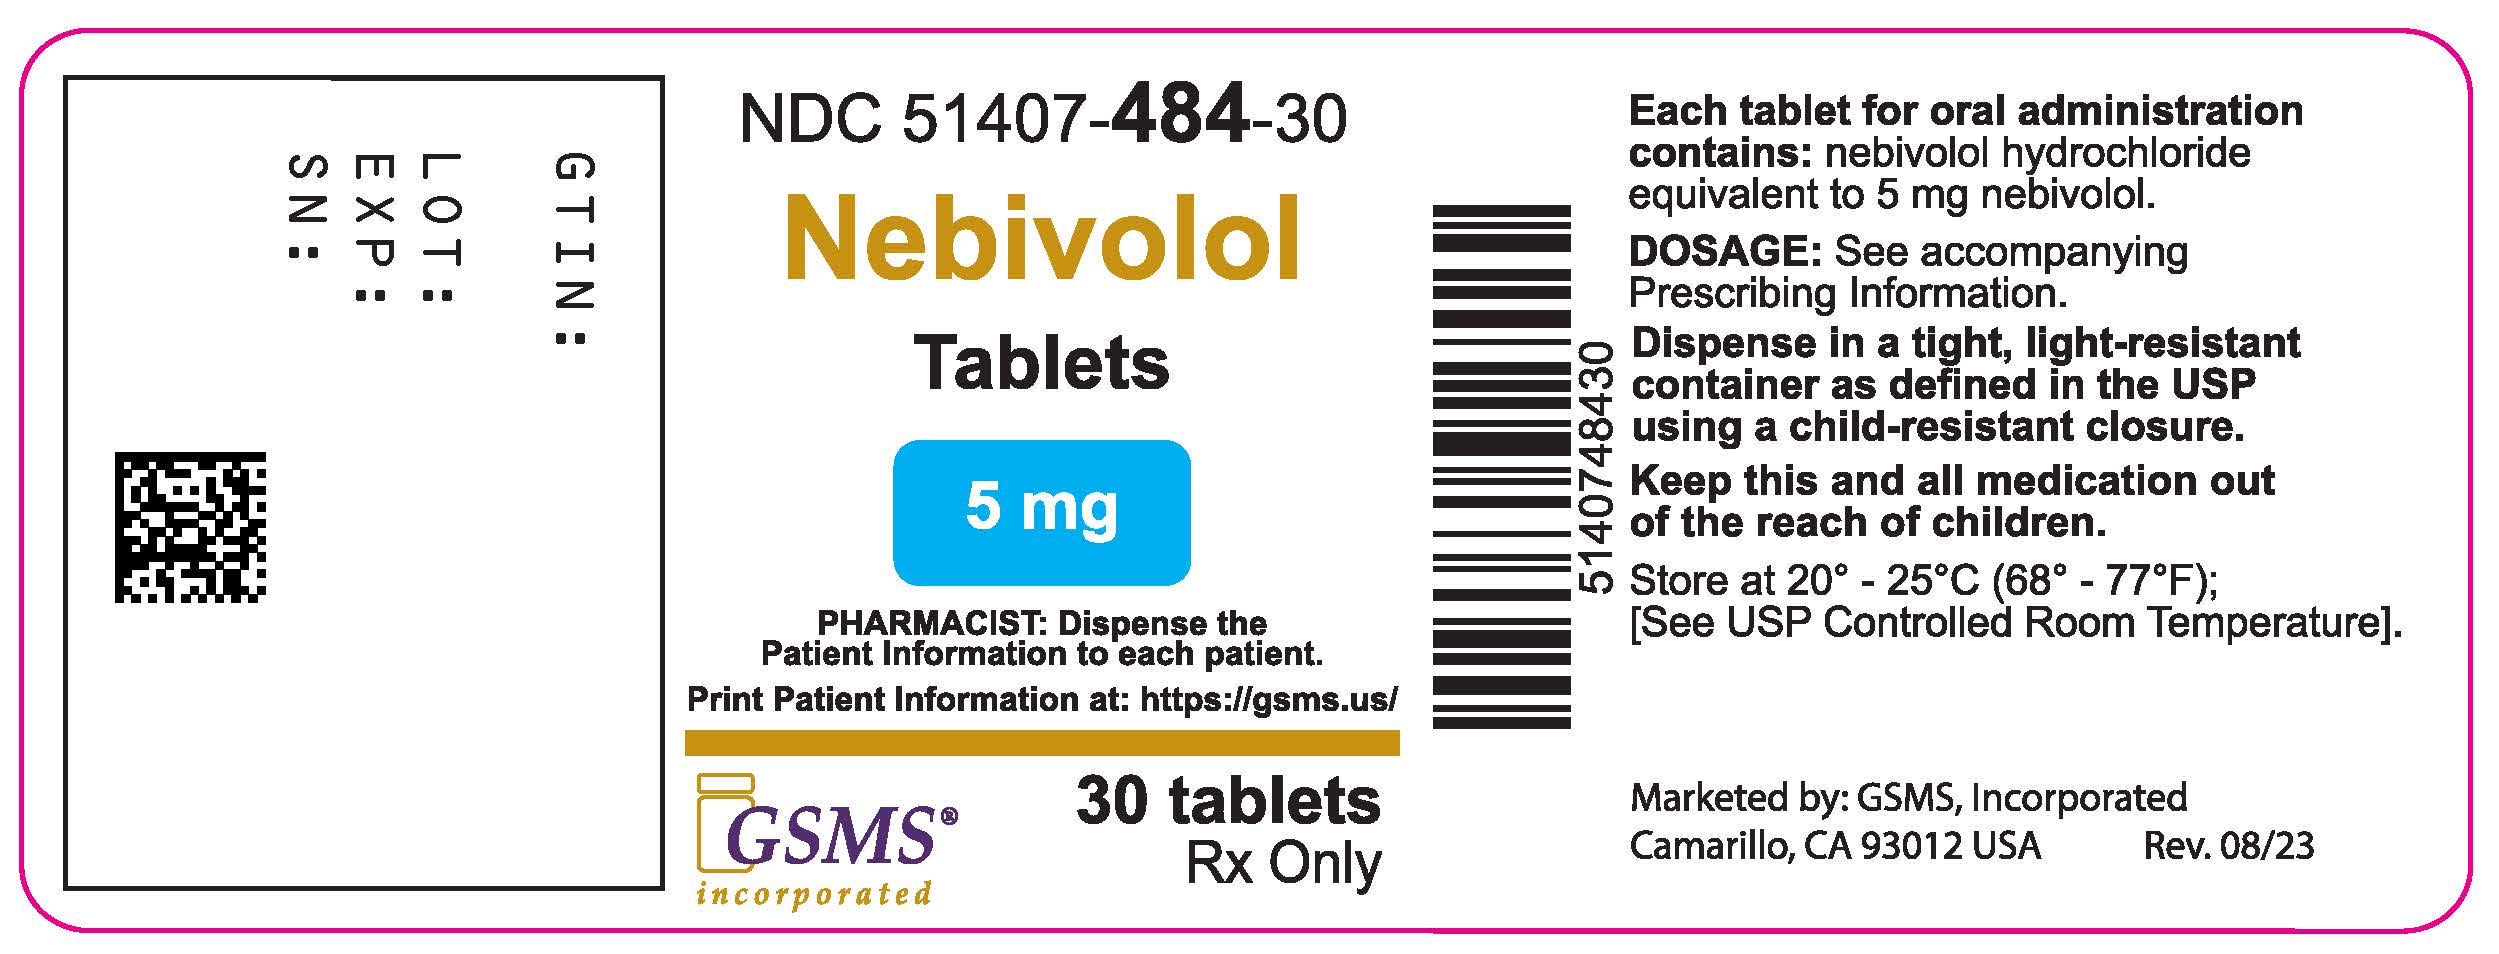 51407-484-30LB - Nevibolol Tablet - Rev. 0823.jpg